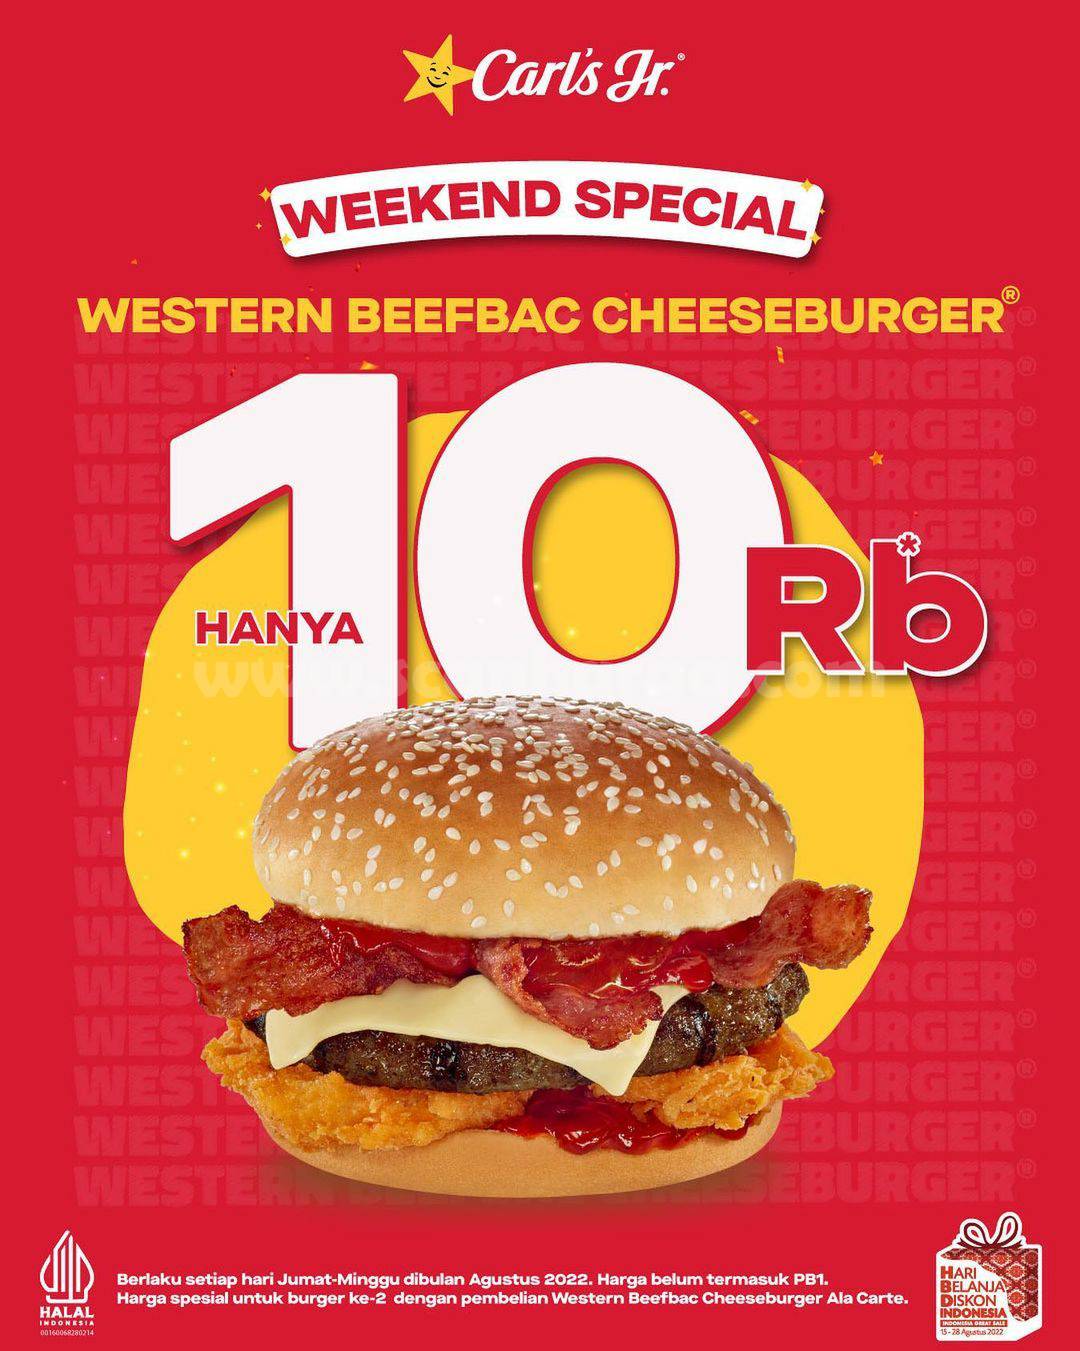 CARLS JR Promo WEEKEND SPECIAL! Cheeseburger HANYA 10RB